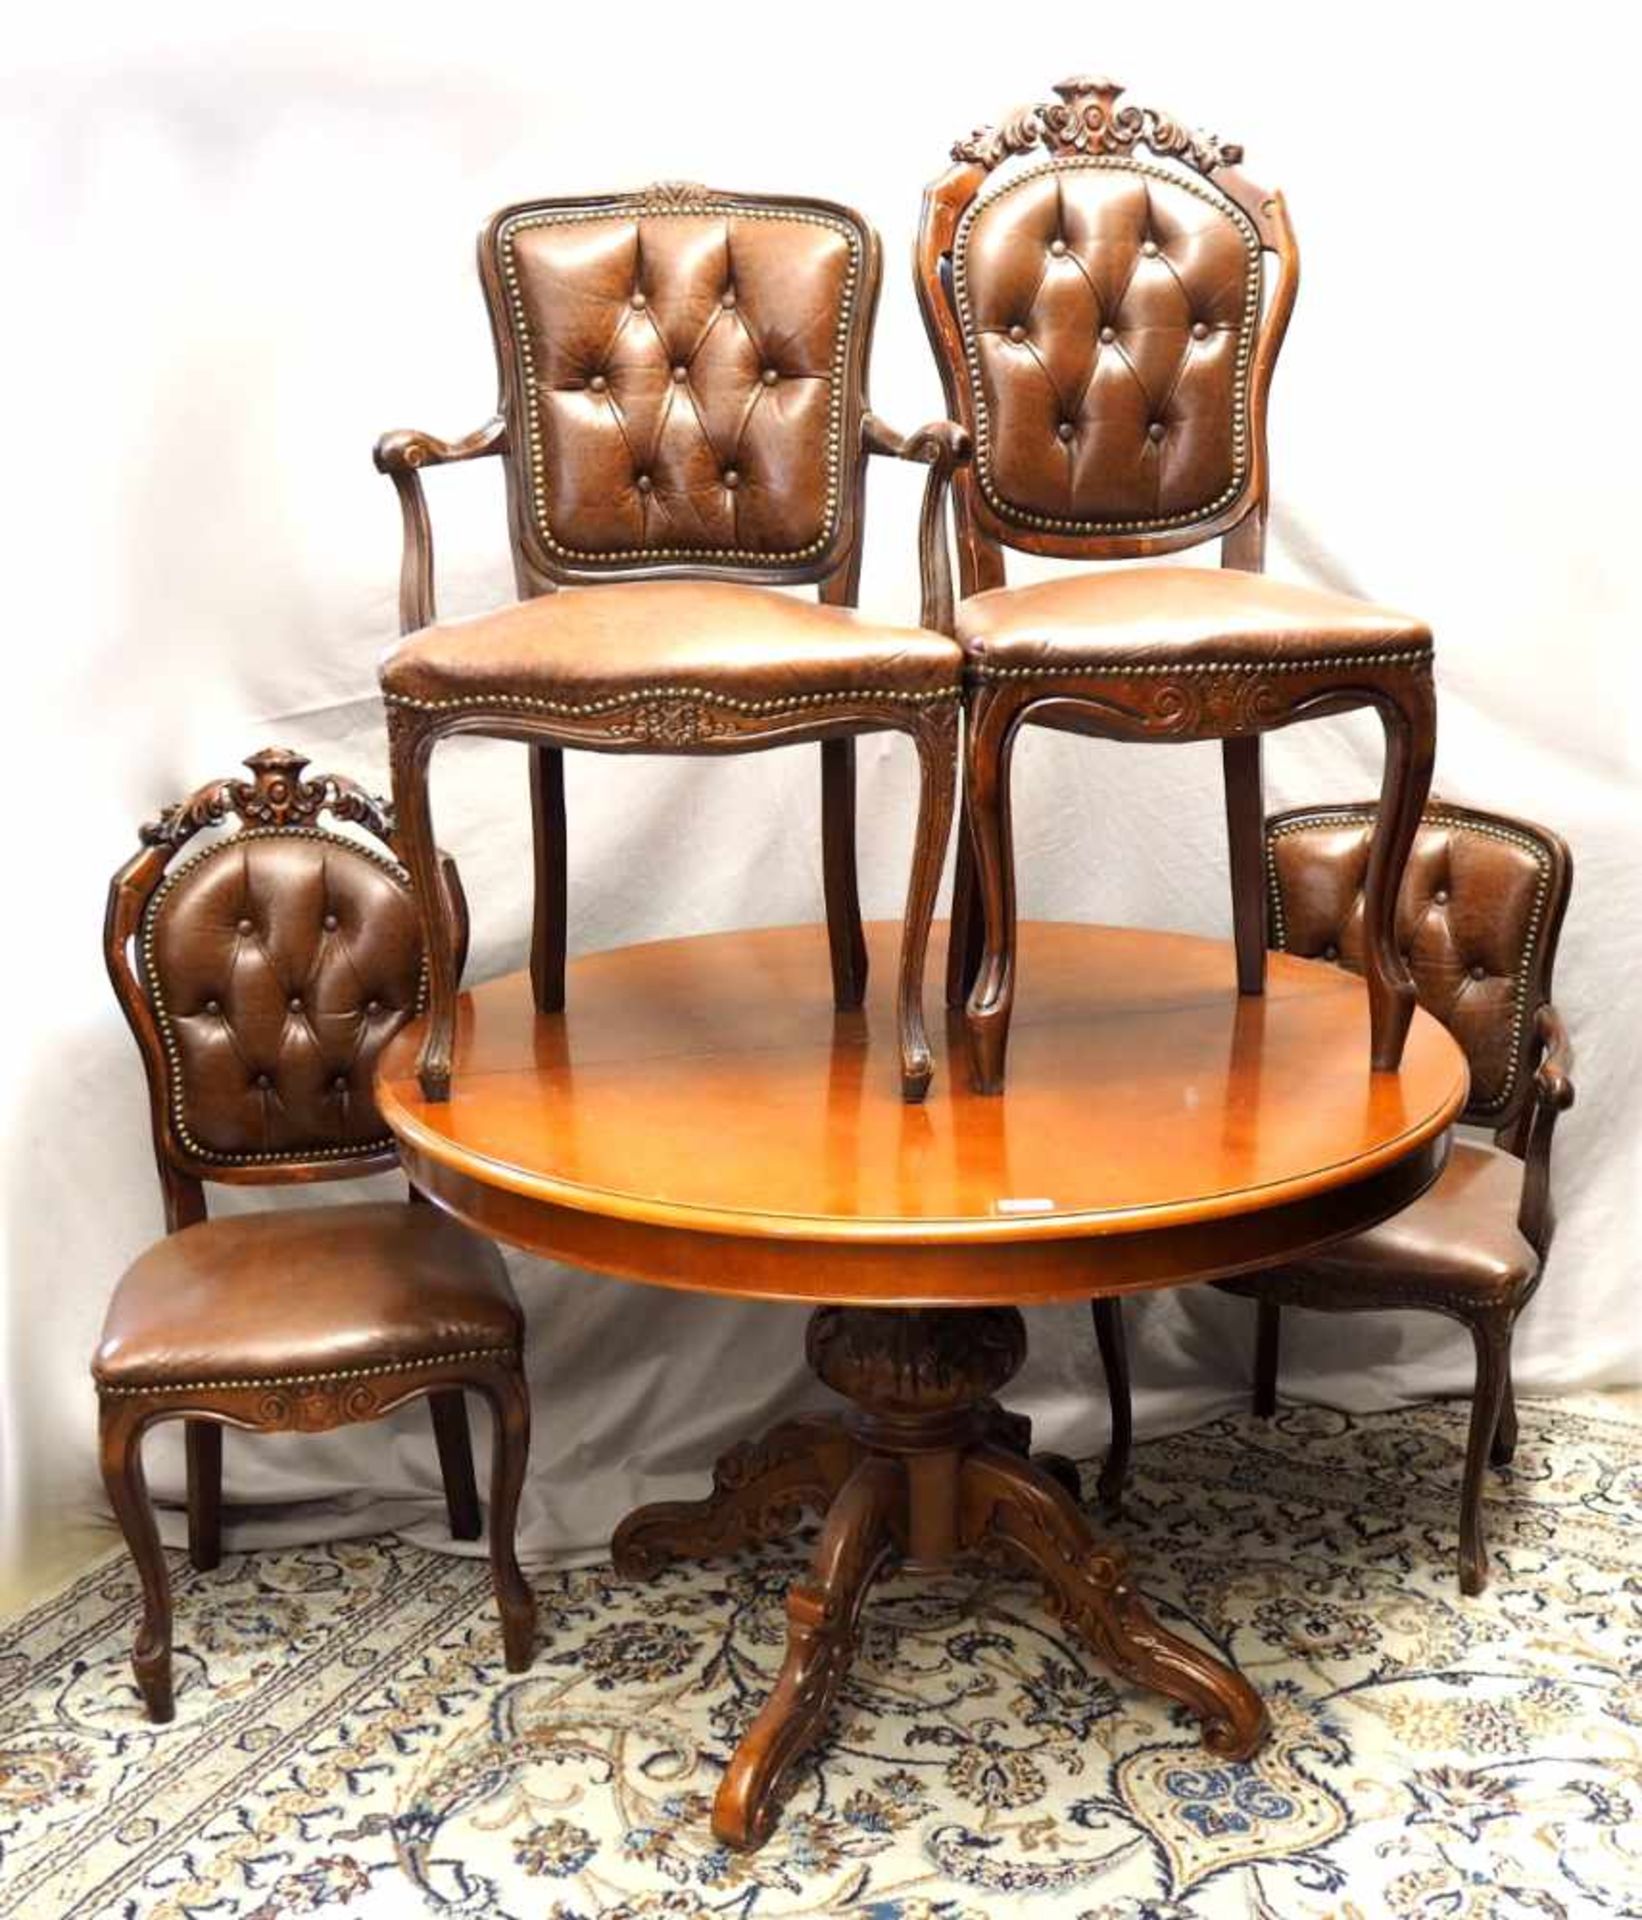 1 SitzgarniturHolz Stil Wiener Barock Tisch runde Pl. D ca. 120cm ausziehbar m. 4 Stühlen brauner